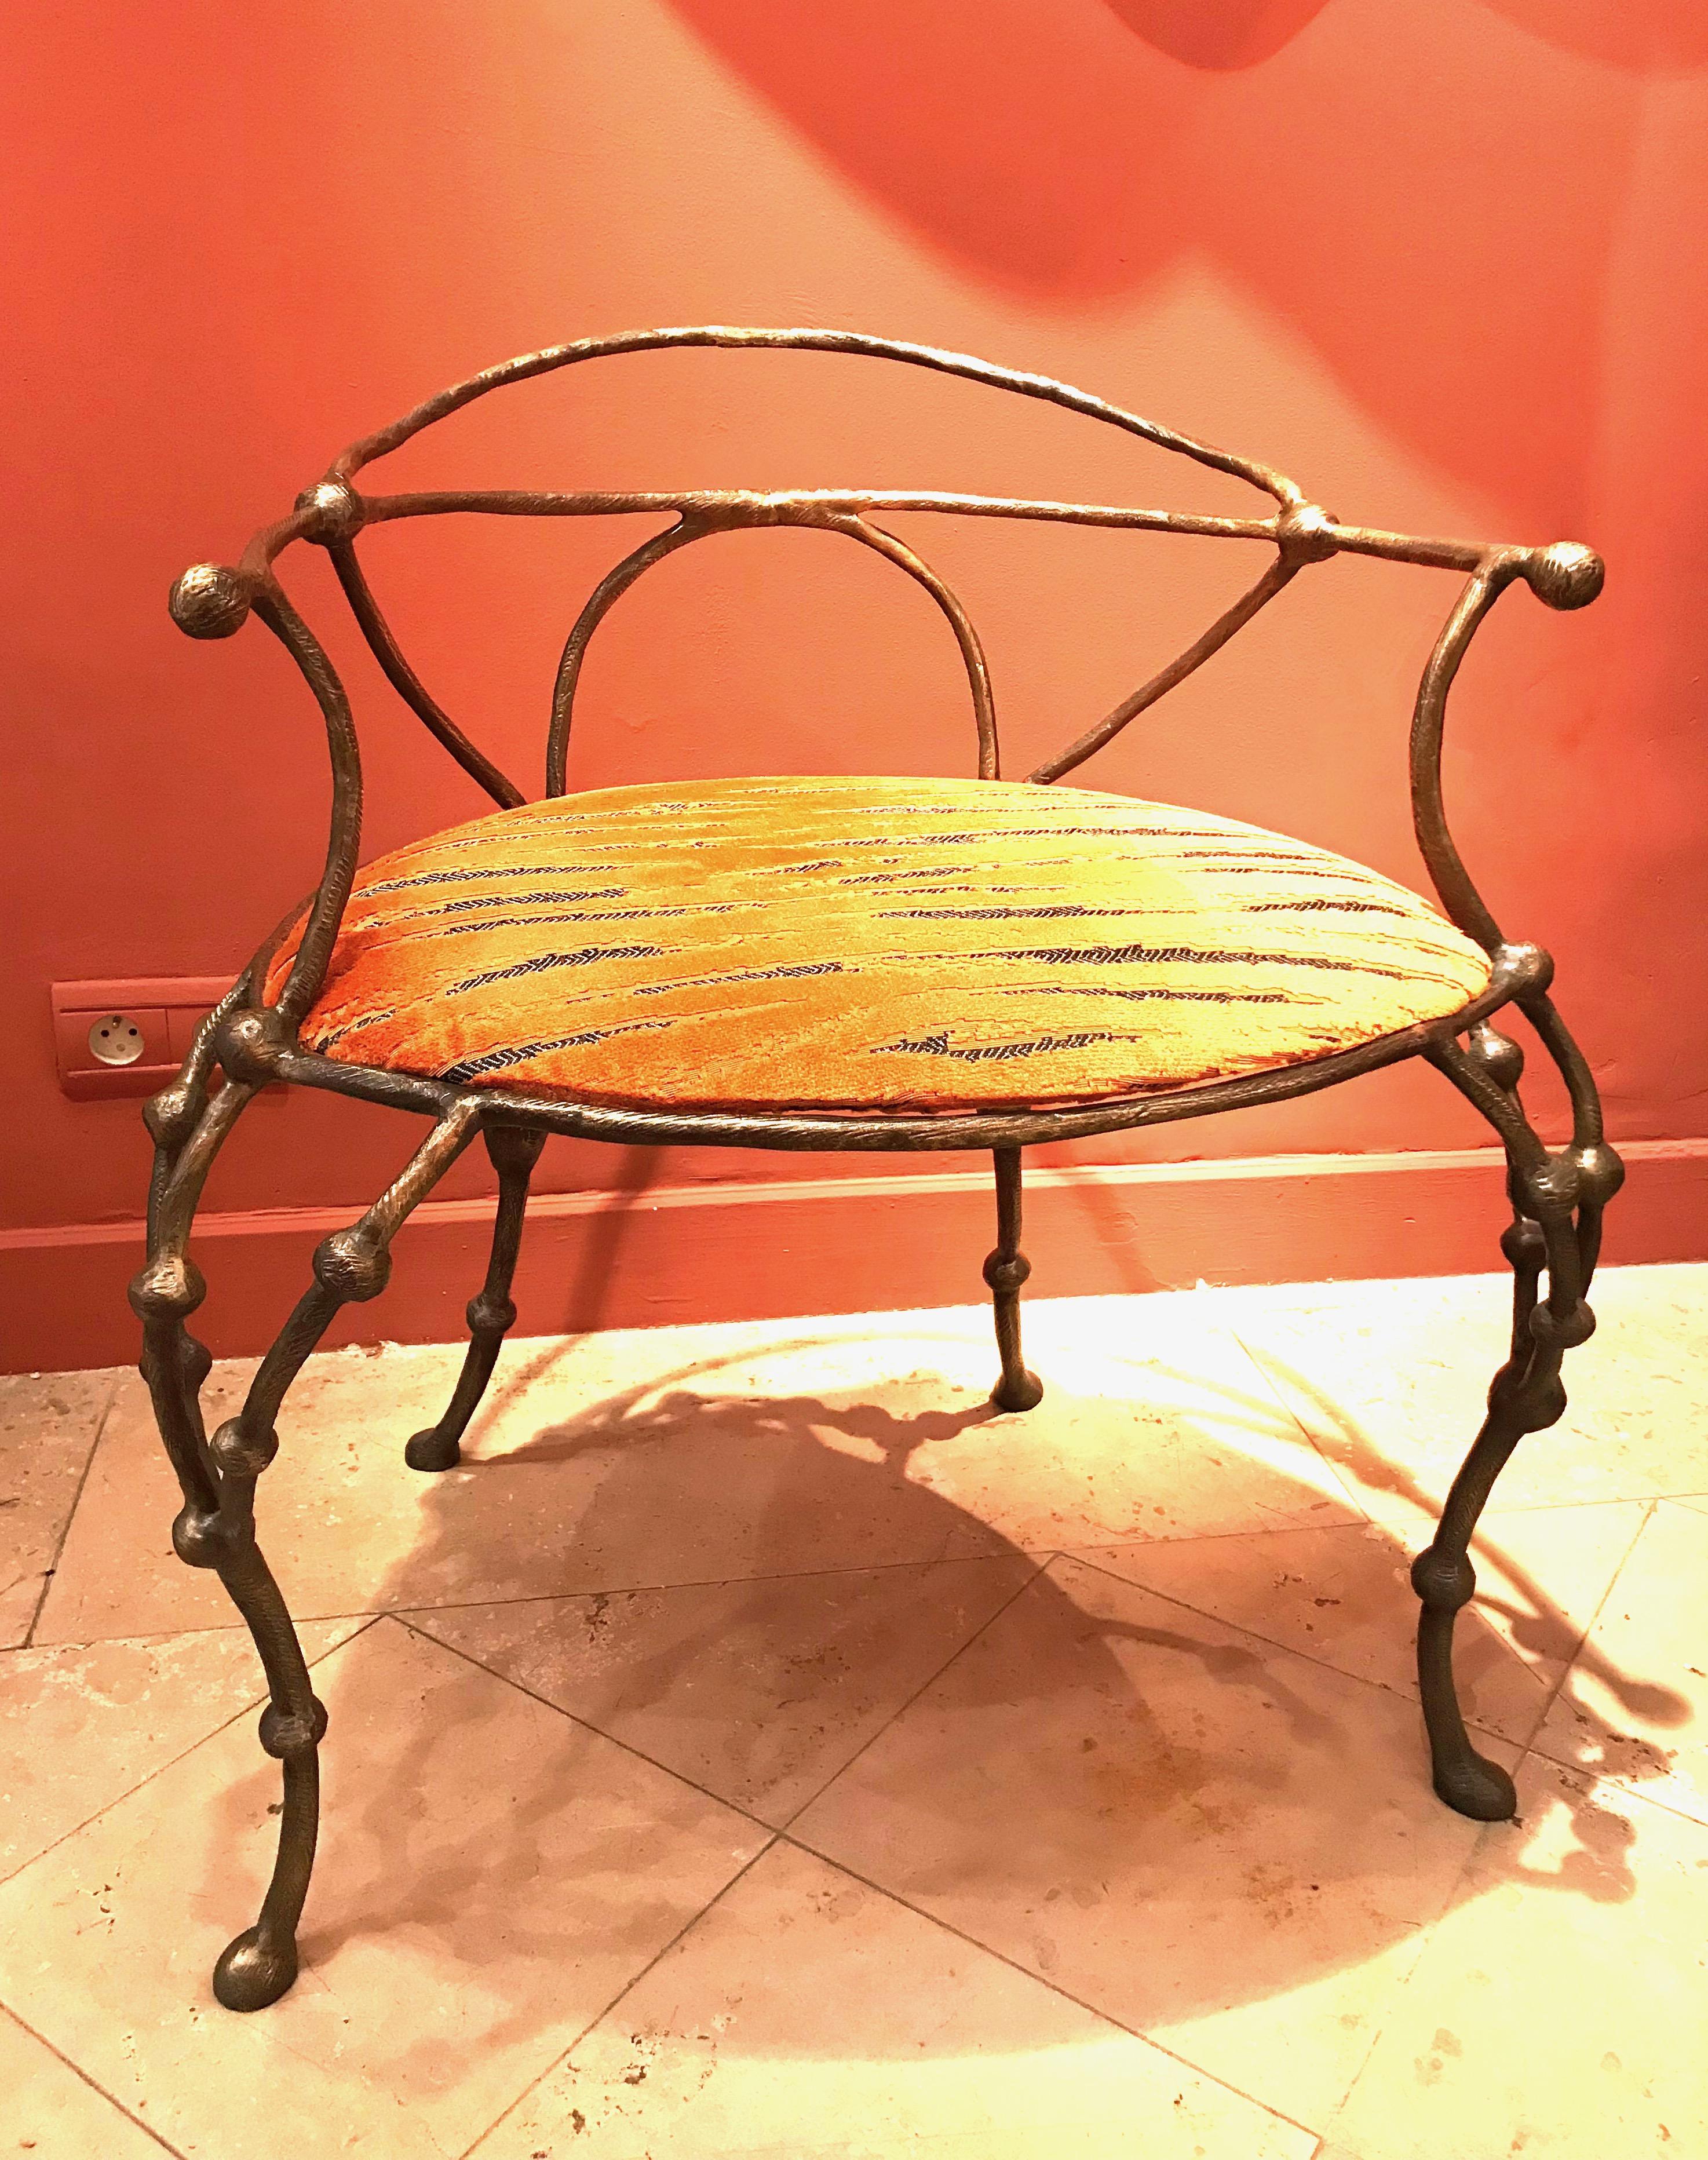 Franck Evennou 2009, Paar Sessel aus Bronze, 2 aus einer Auflage von 8.
Maße: 75 cm H, 56 cm L, 45 cm P
Datiert und unterschrieben

Franck Evennou verwendet die Bronze wie ein Dichter die Worte. Er verwendet die Sprache der Materie, um eine